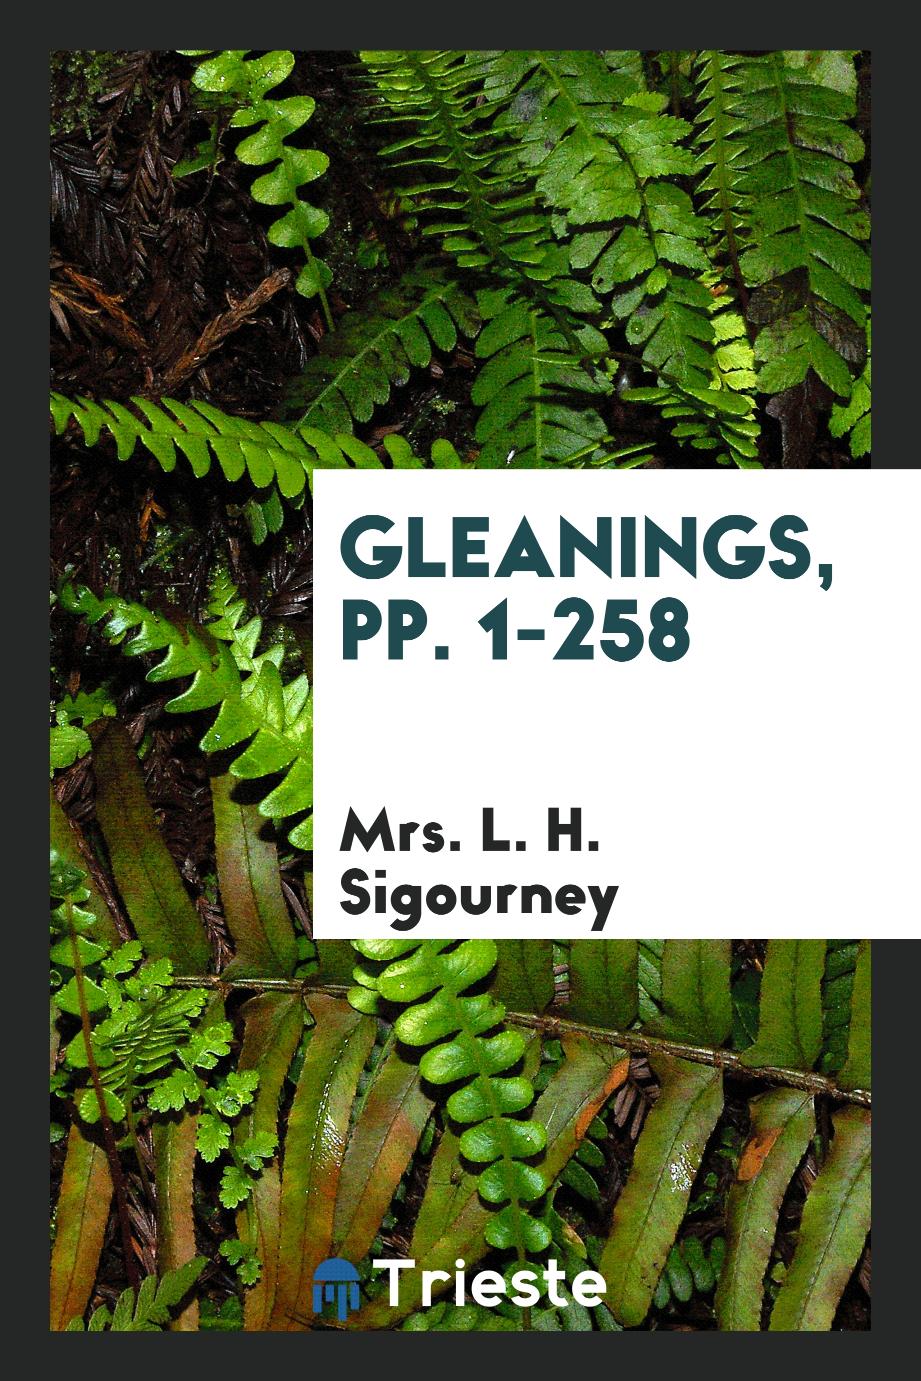 Gleanings, pp. 1-258